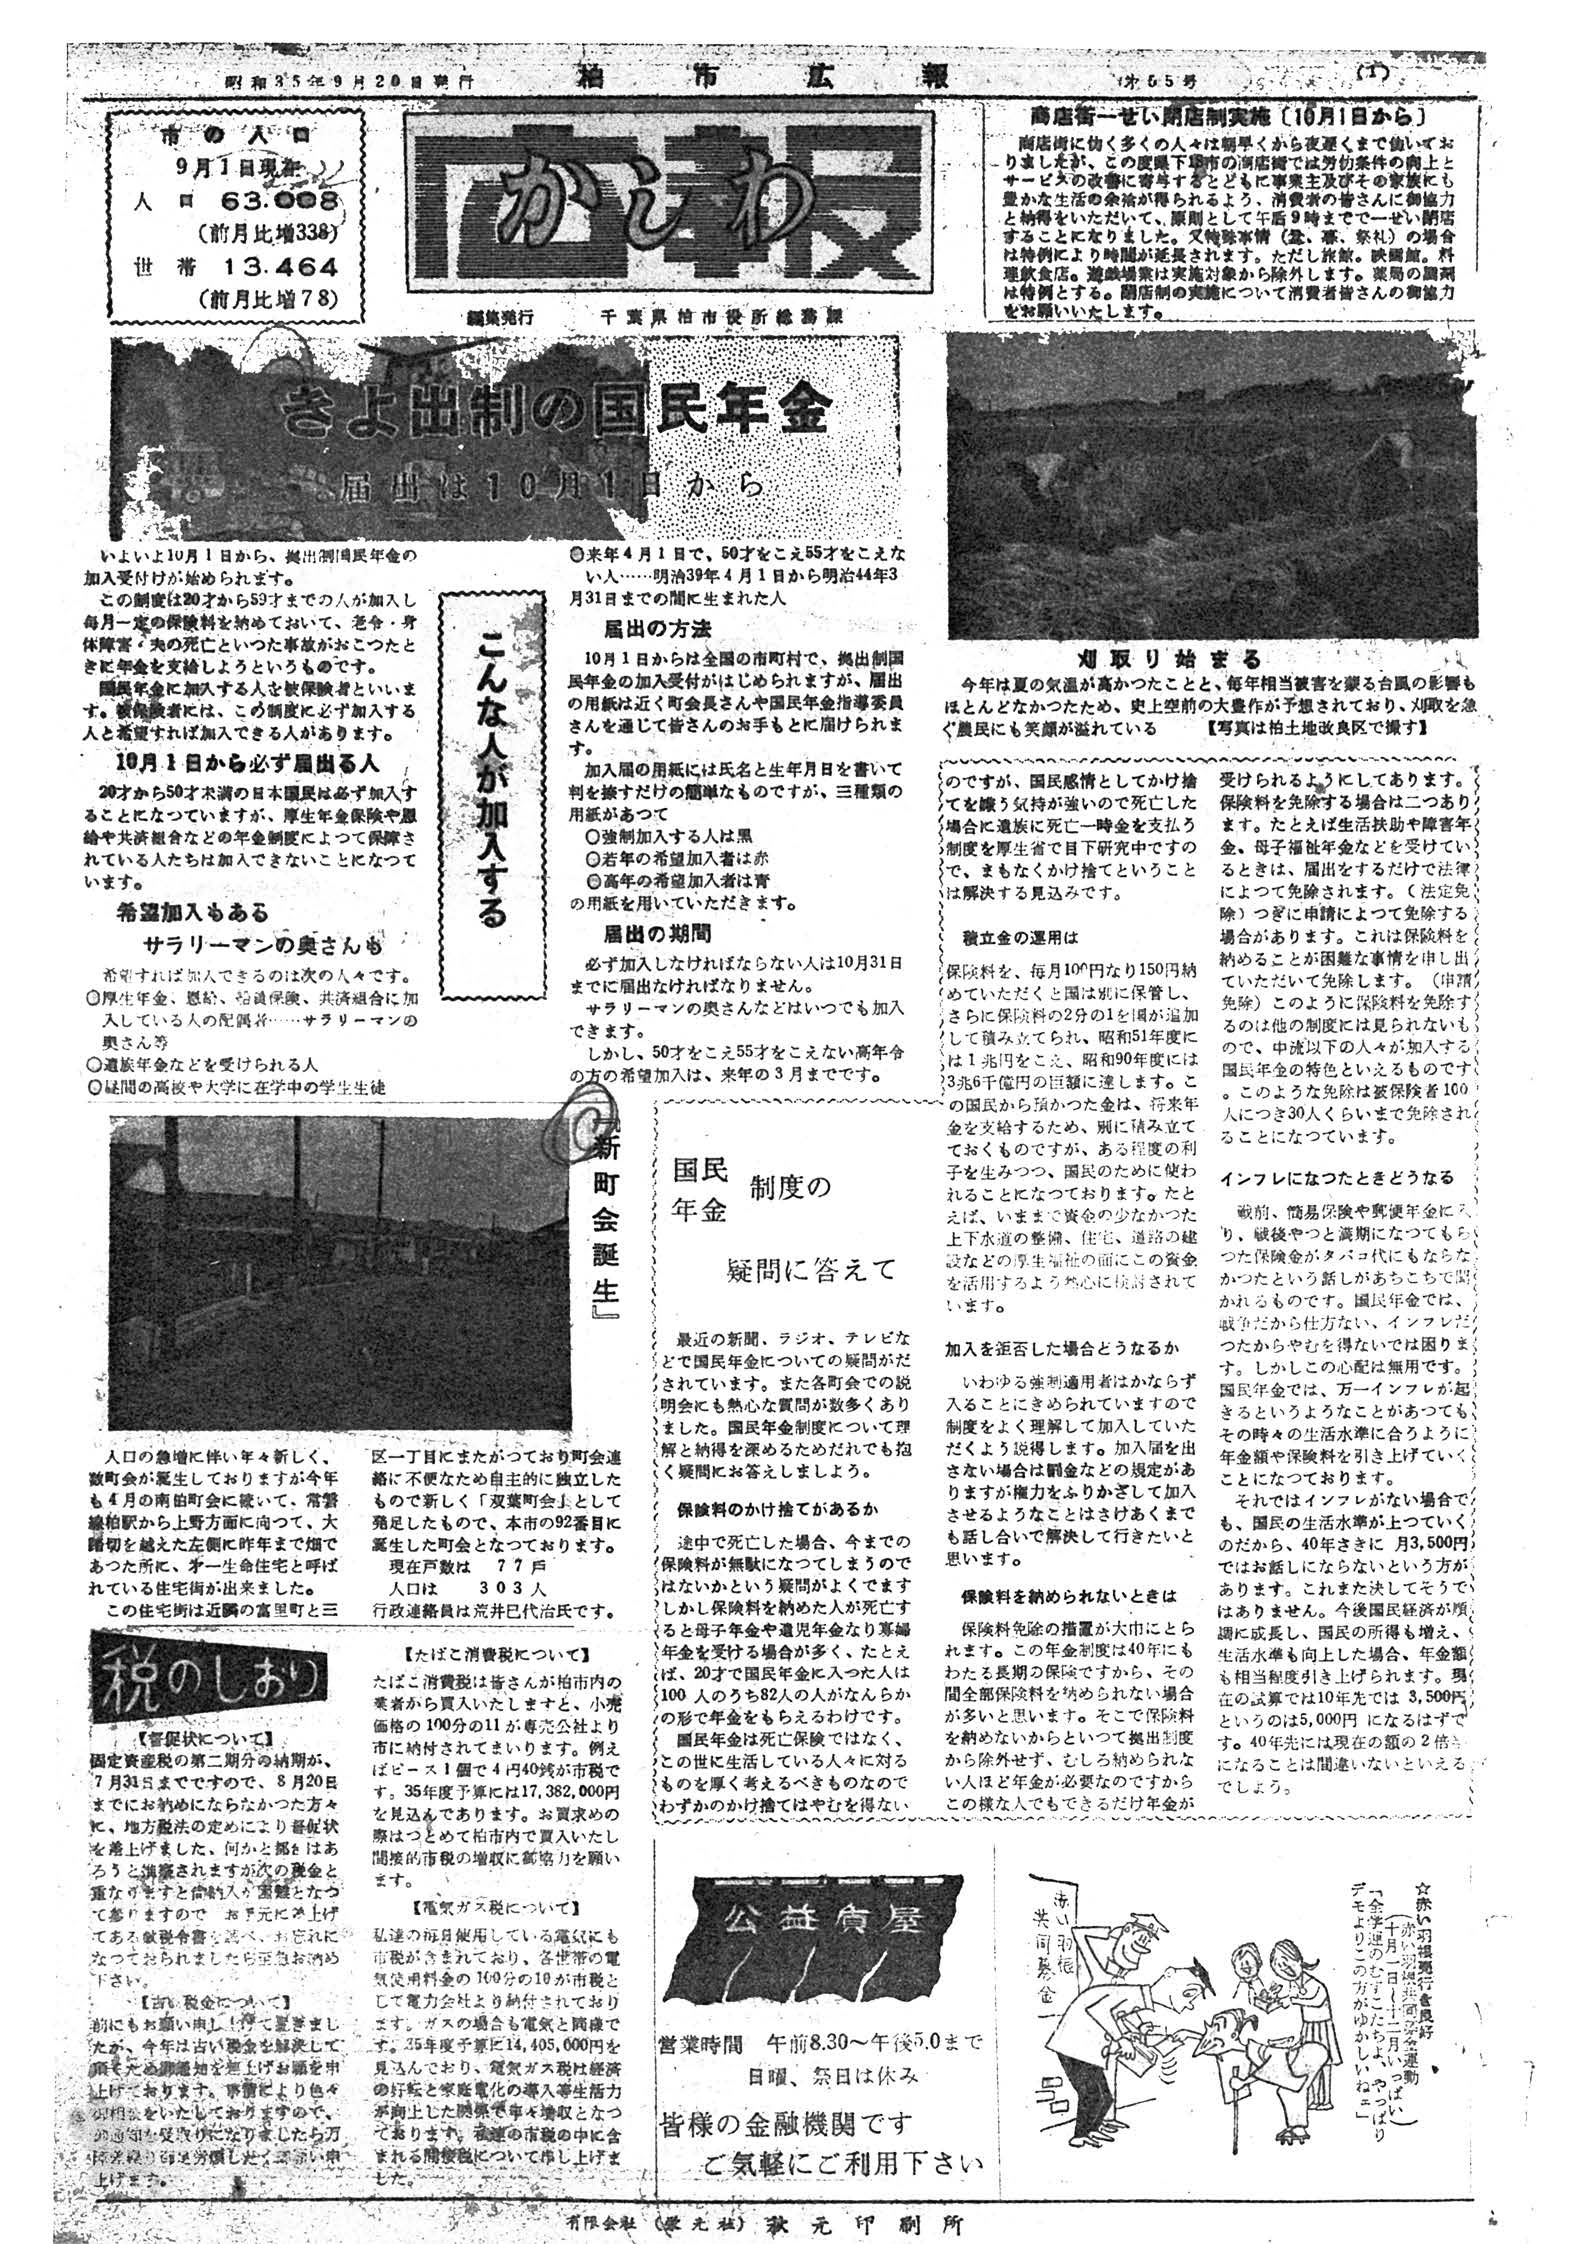 広報かしわ　昭和35年9月20日発行　55号